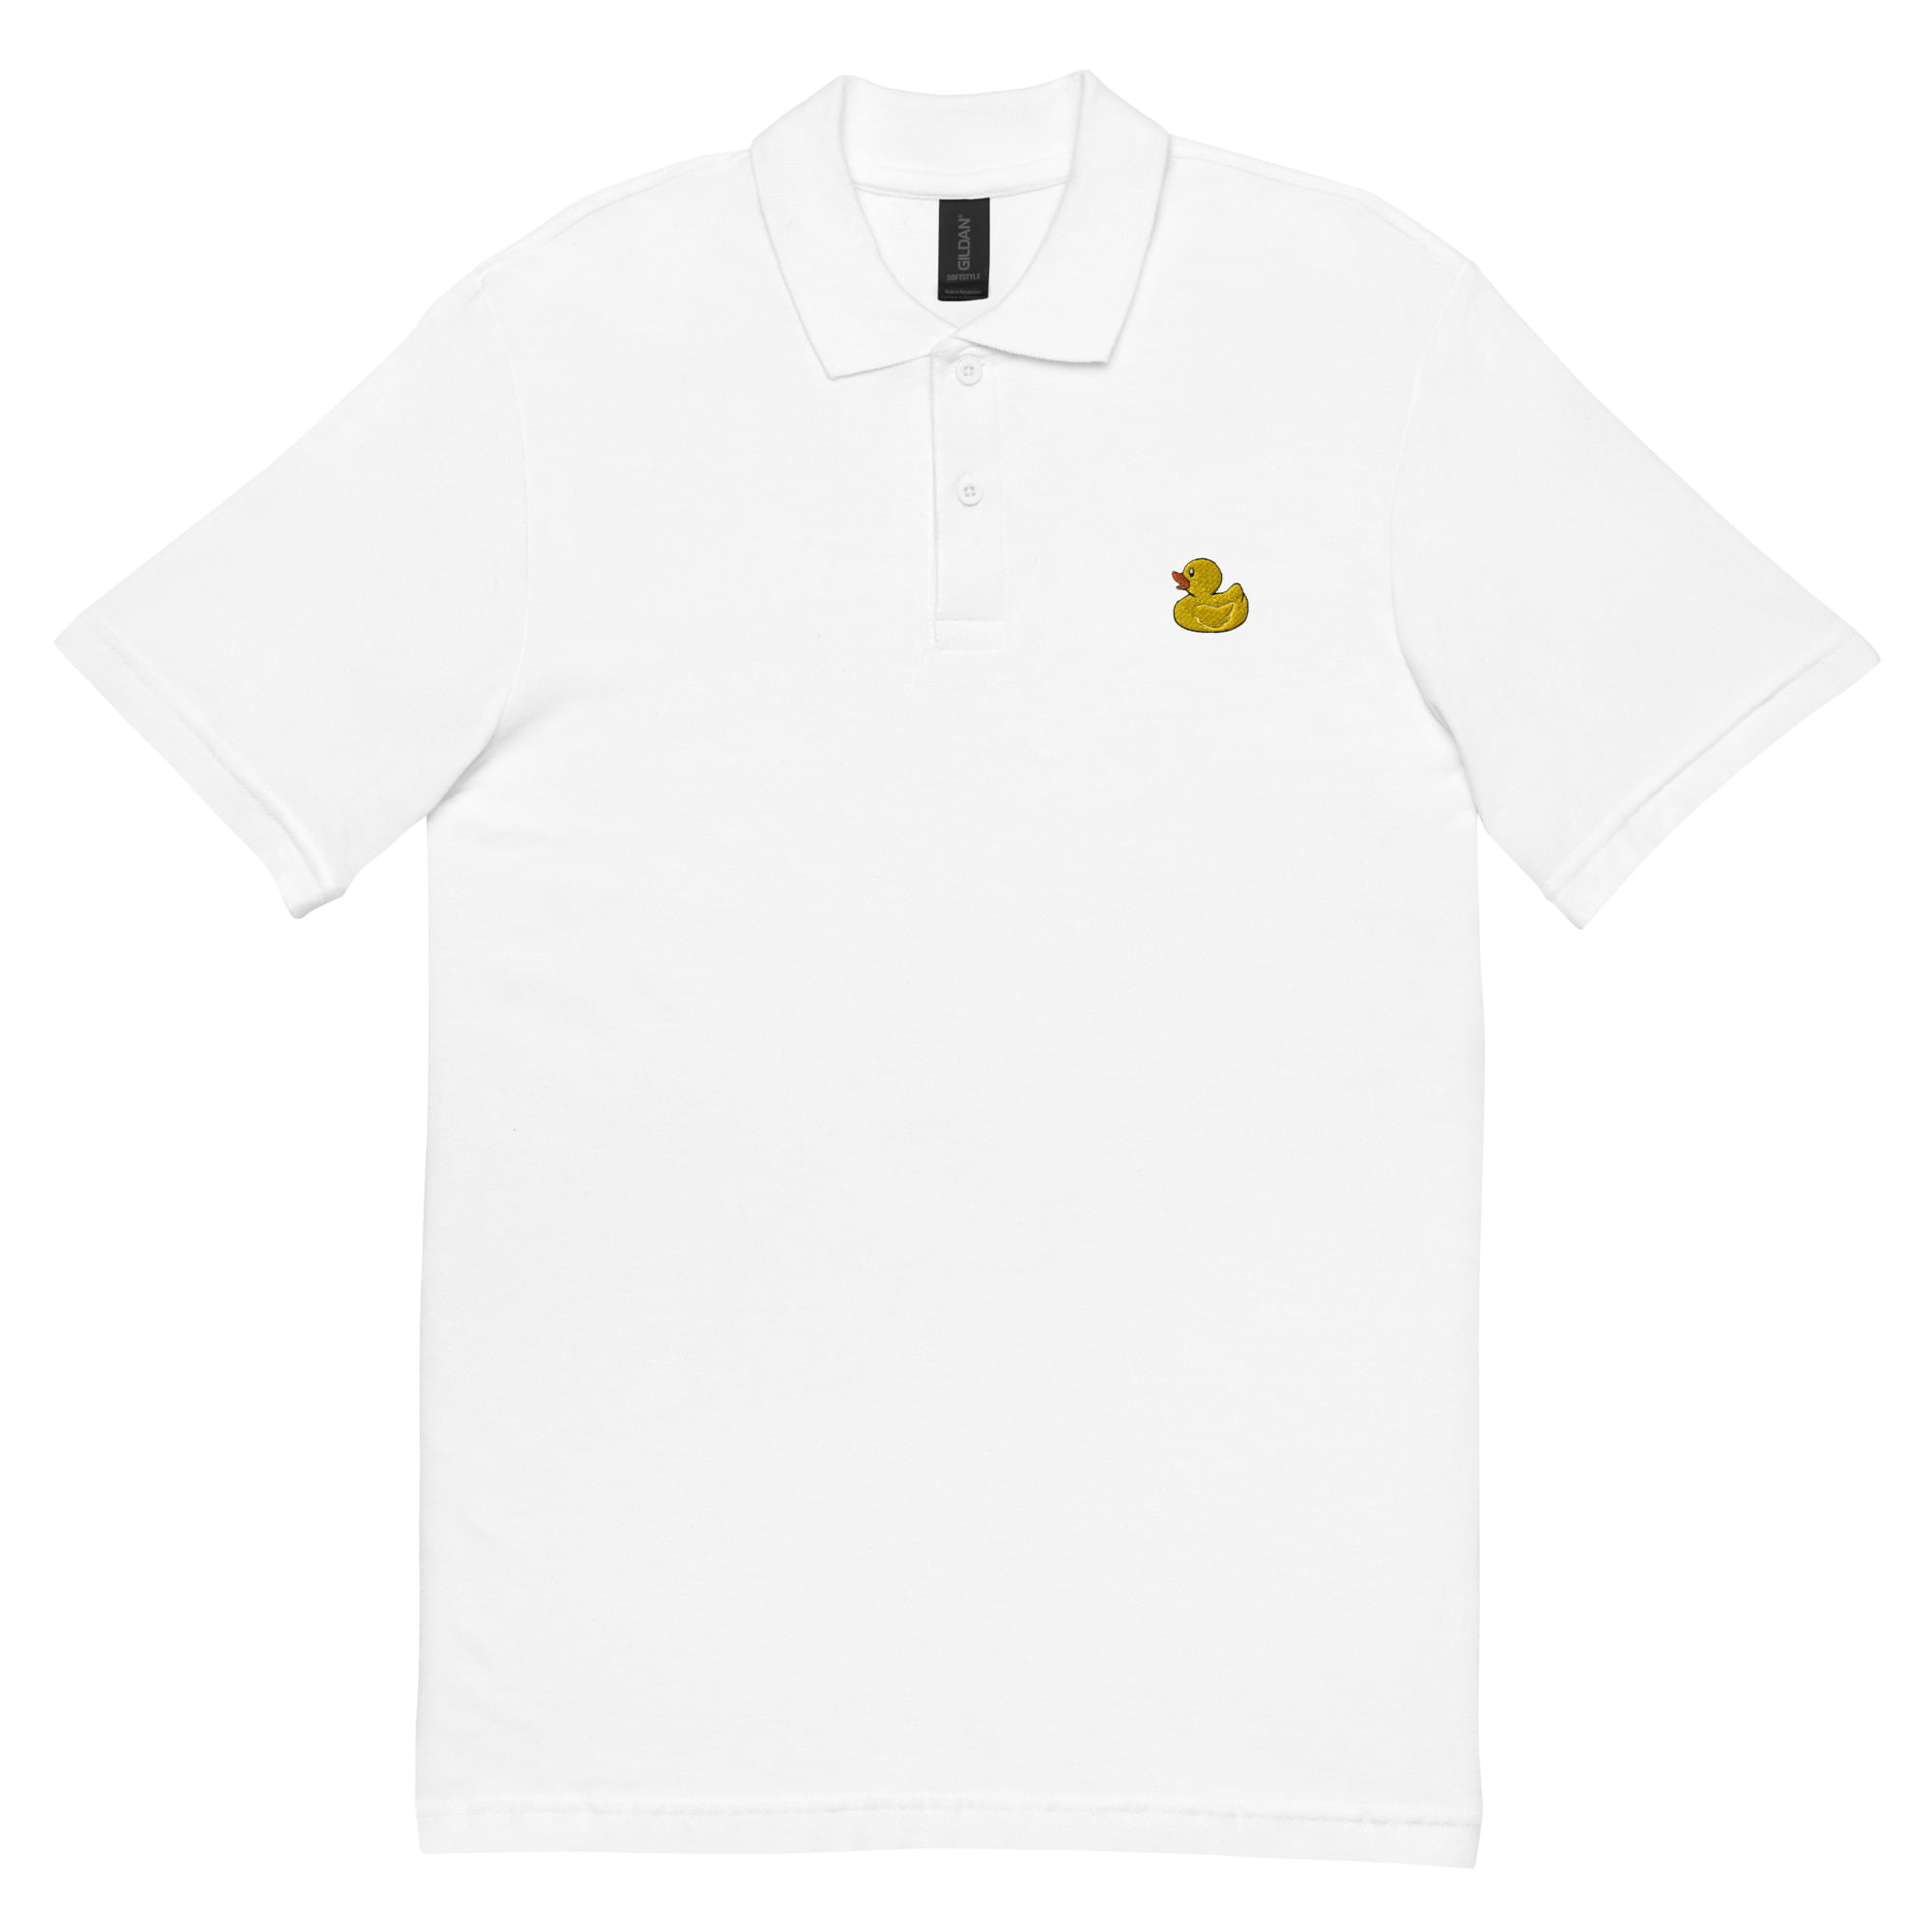 unisex pique polo shirt white front 64771e4a18dc6